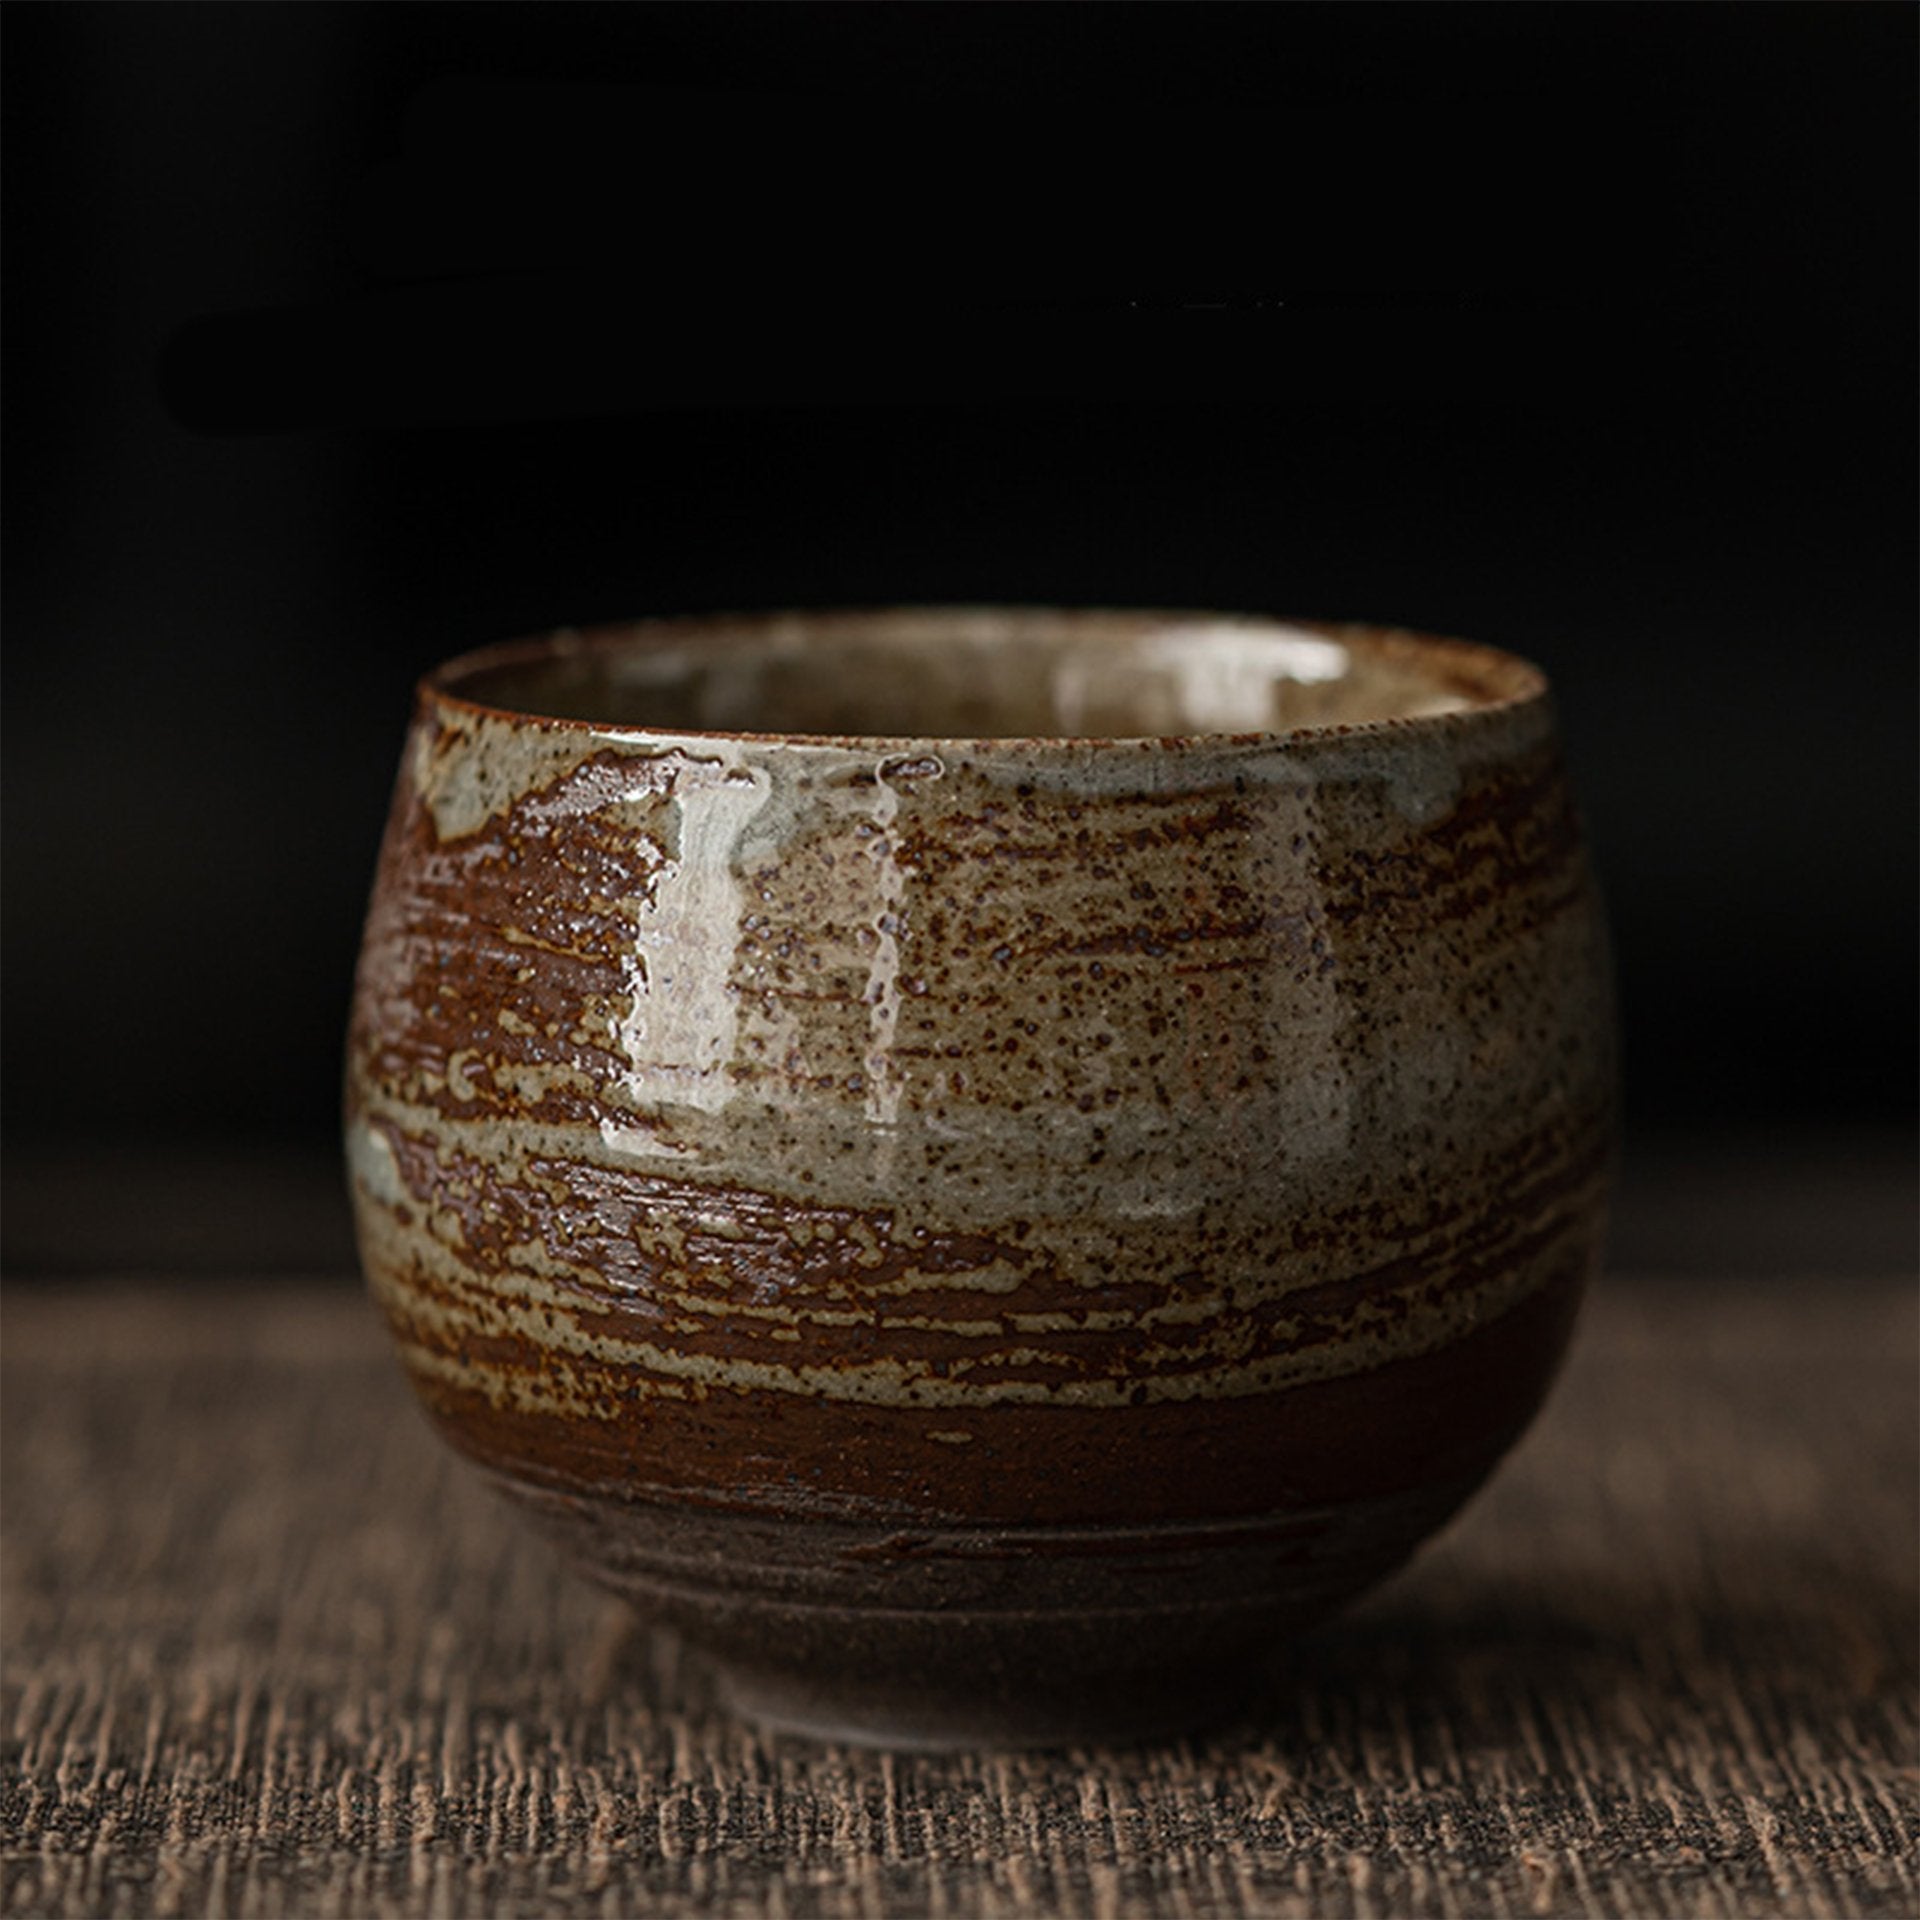 Beige striped ceramic tea bowl on dark background